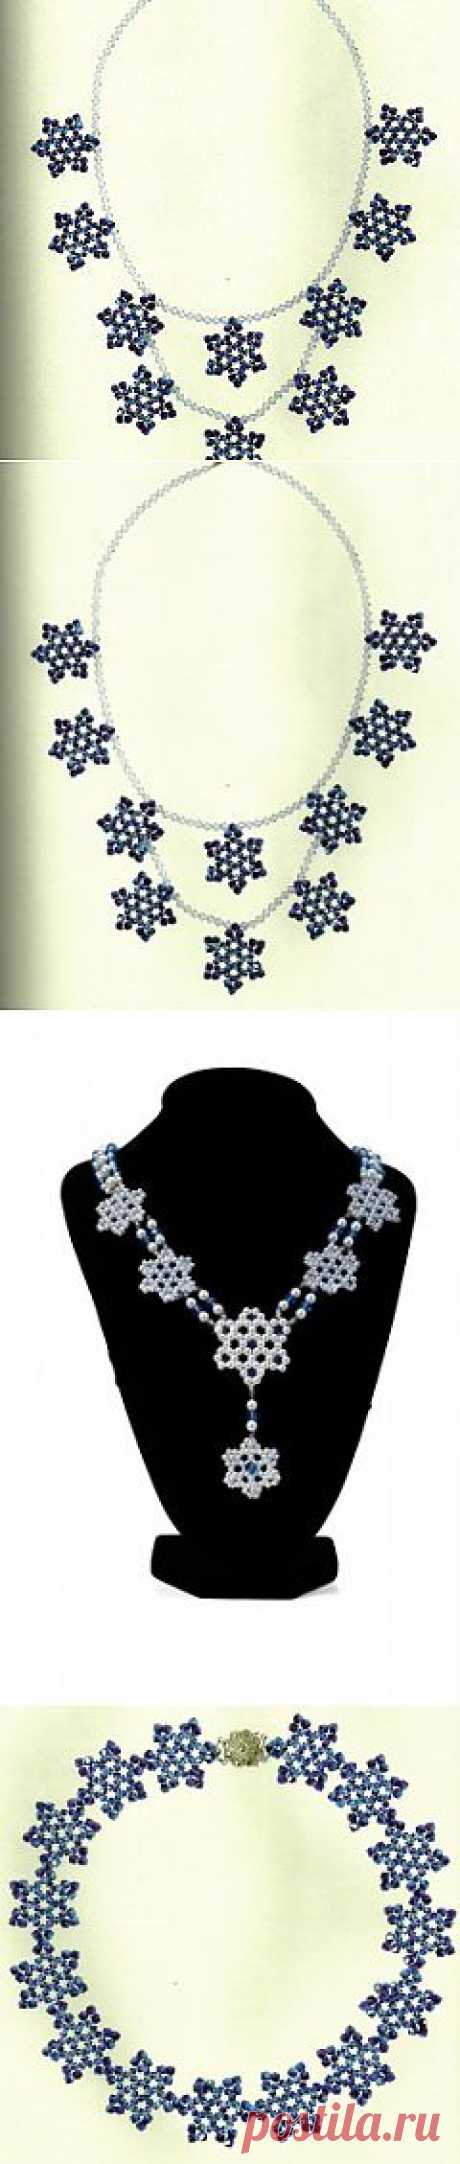 Ожерелье «Снежинки» из бисера | Бисер|Магия  бисера